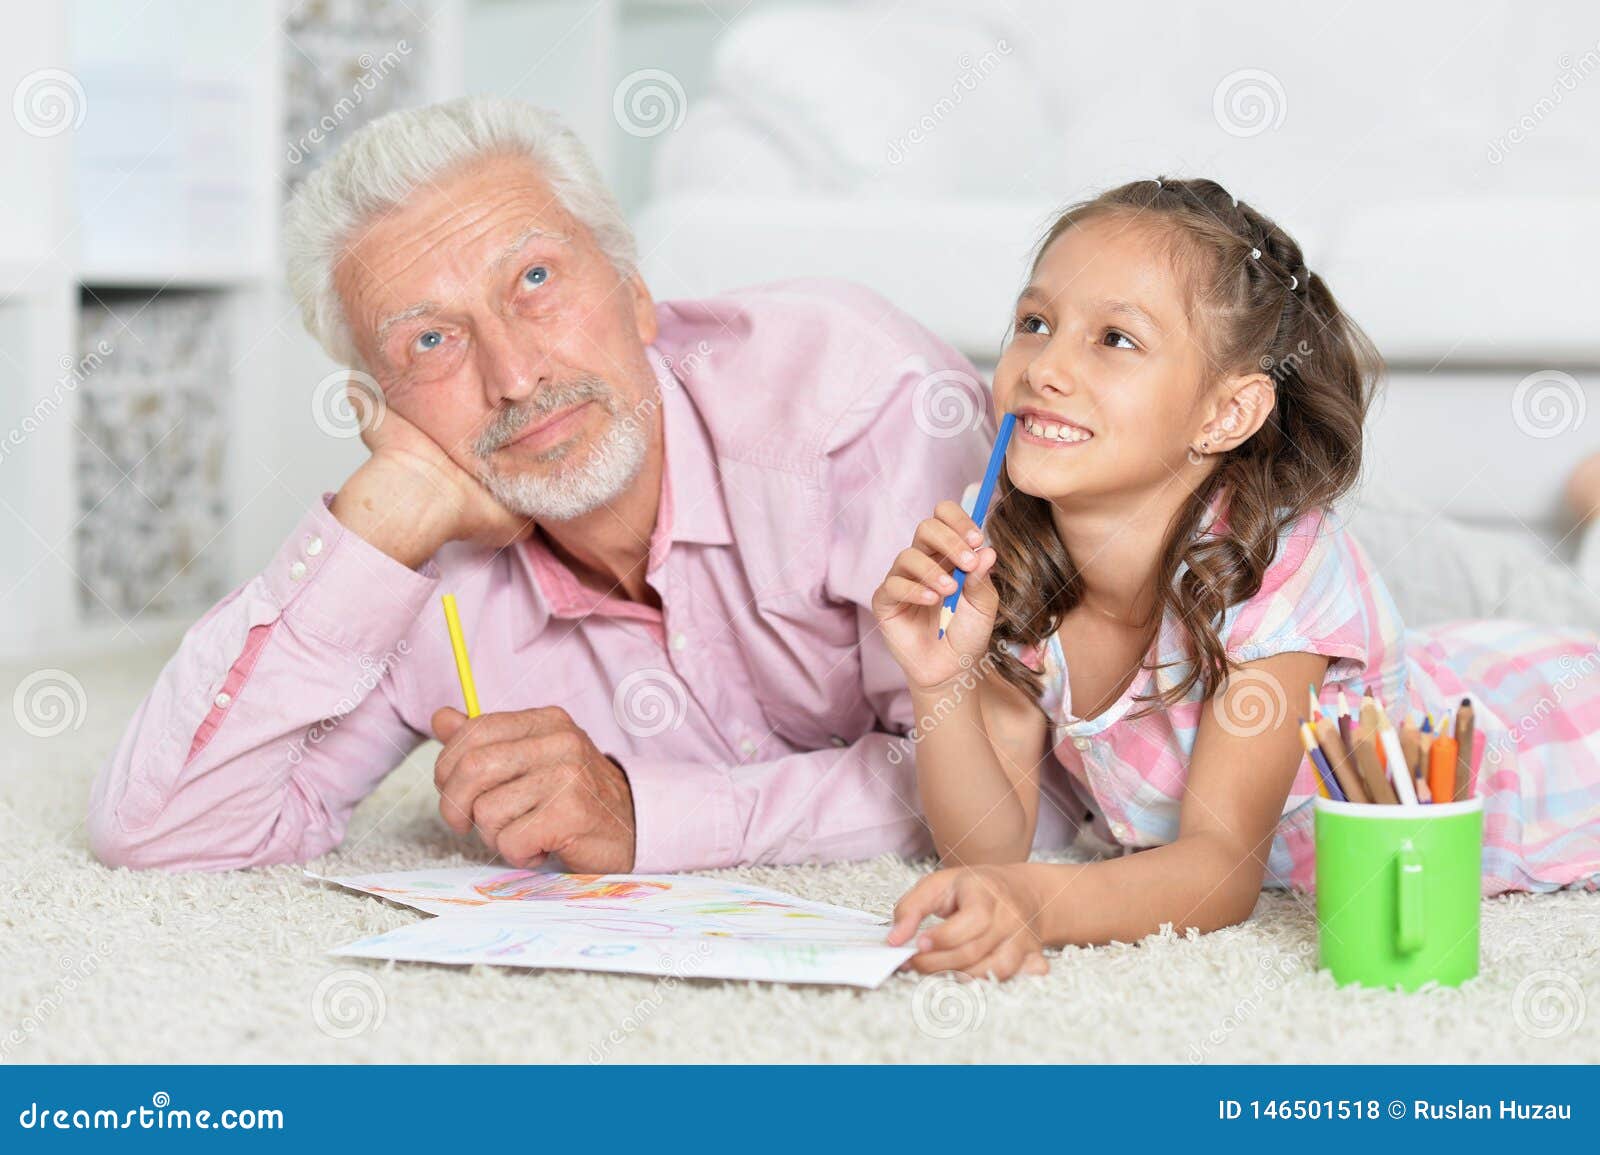 Дед внучкой занимается. Счастливый дедушка с внучкой. Счастливый дедушка с 18 летней внучкой. Фото дедушки с внучкой нарисовано. Внучка и дедушка чертеж.